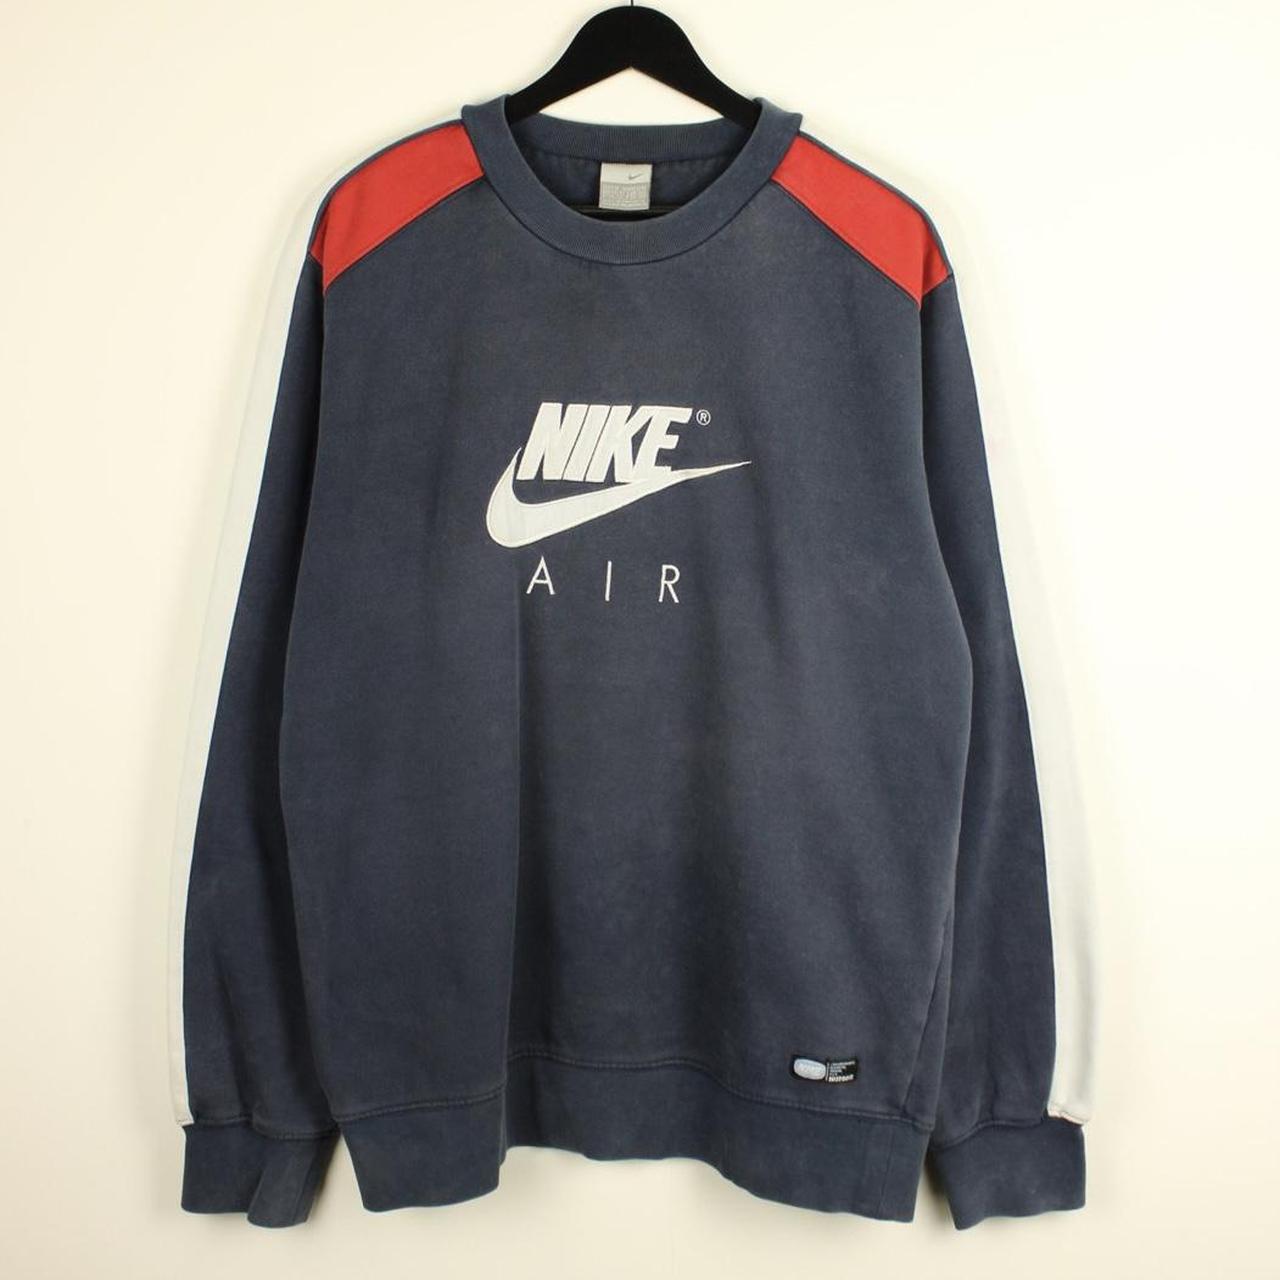 Nike Men's Blue and Red Sweatshirt | Depop